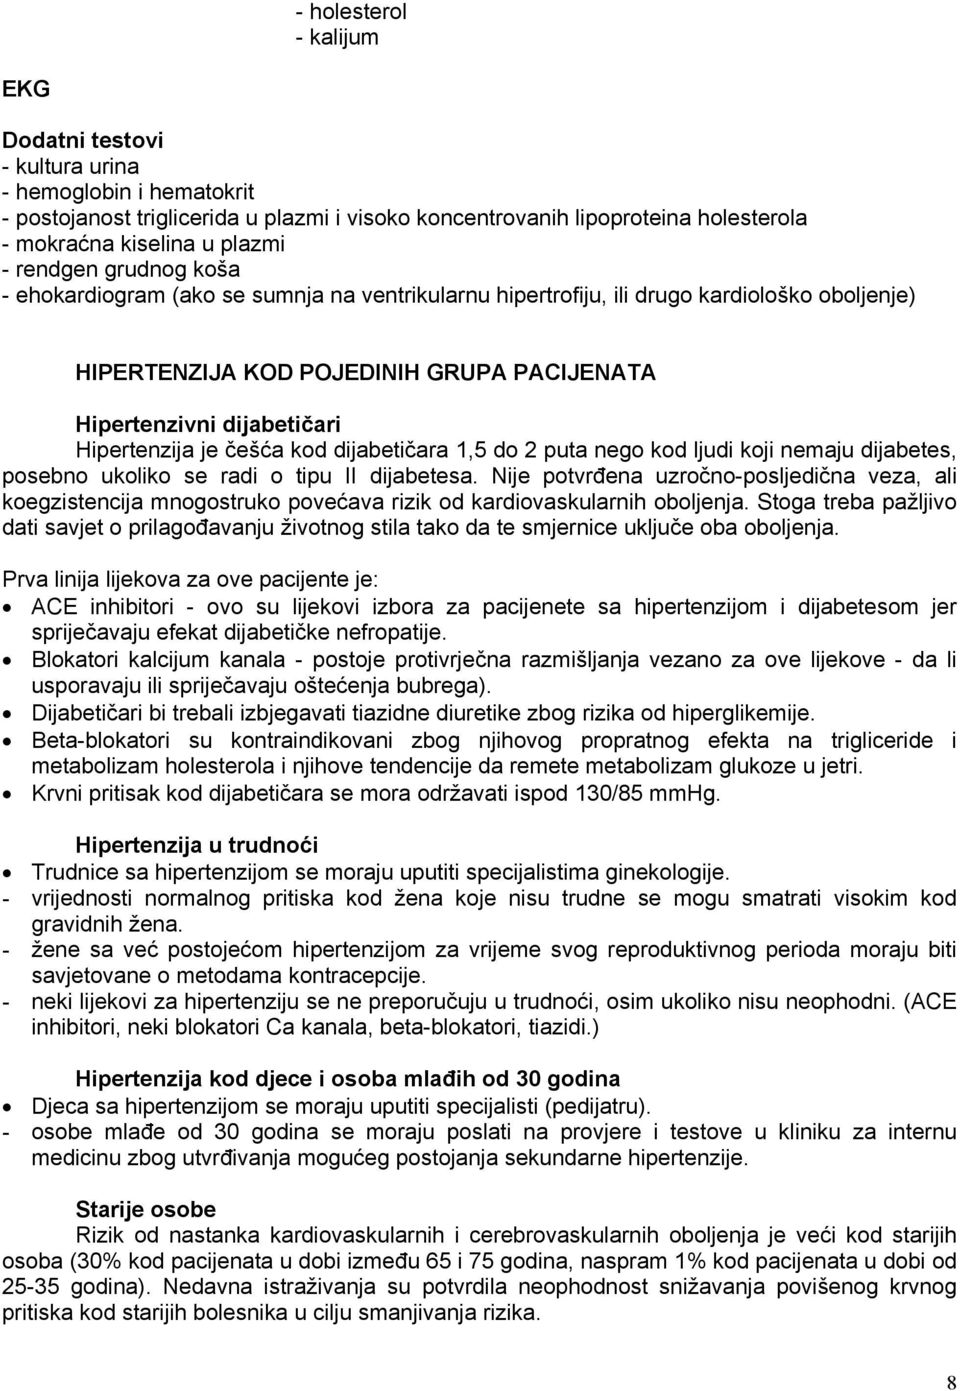 Zdravstvena njega bolesnika sa sekundarnom hipertenzijom | Repozitorij Veleučilišta u Bjelovaru